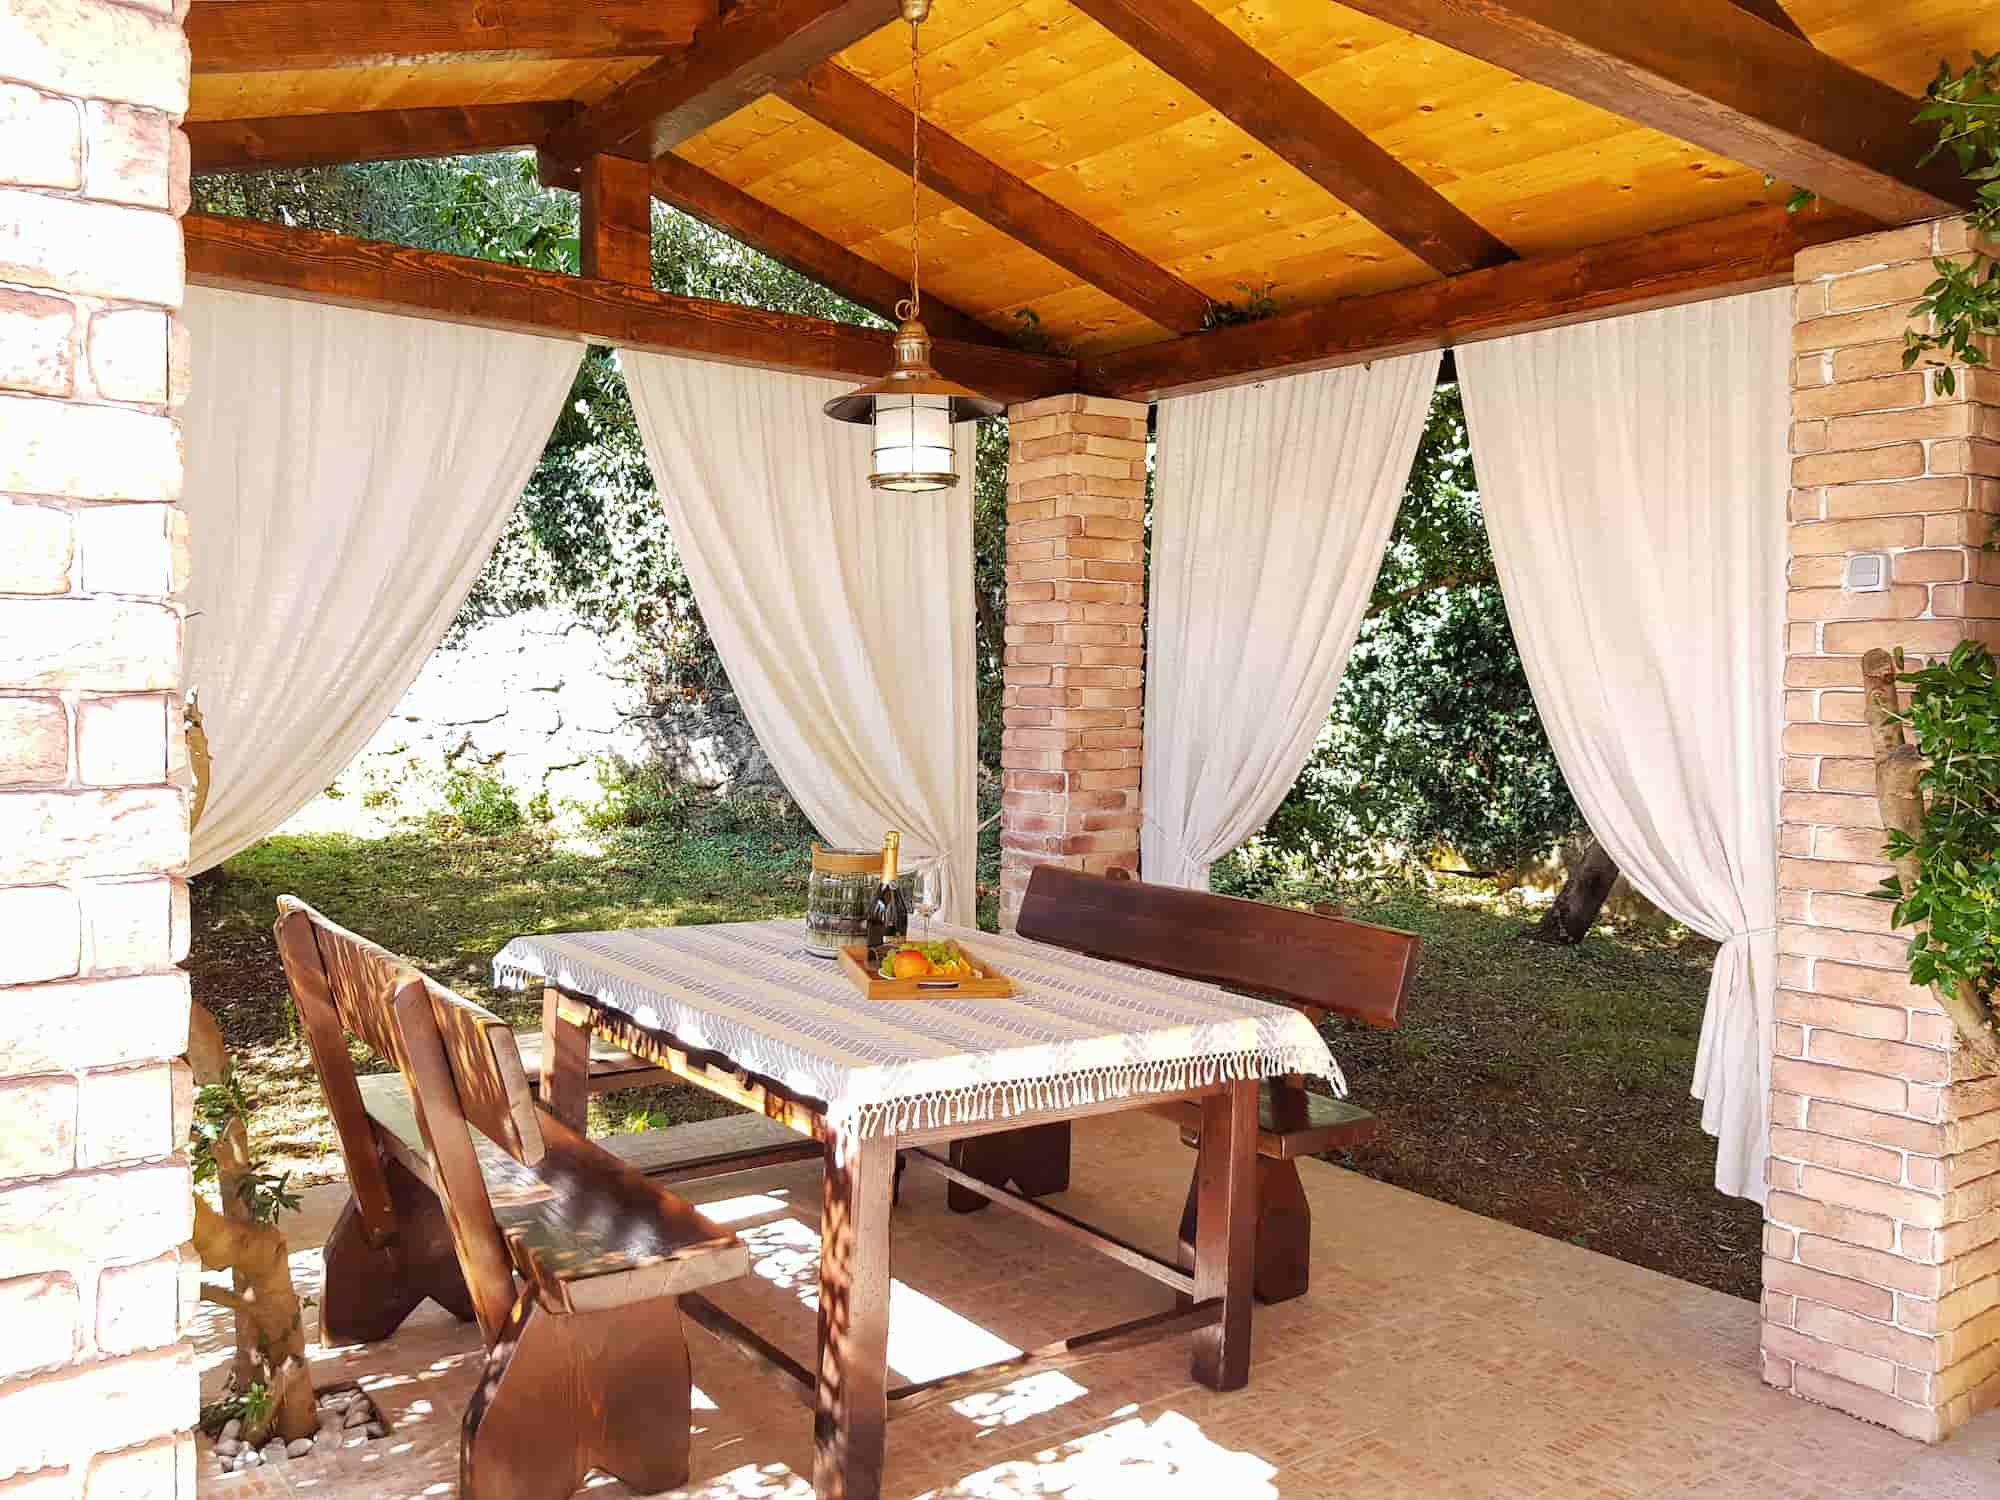 Ferienvilla mit Pool in Kroatien, überdachte Terrasse mit Vordächern und Holztisch und Essbänken